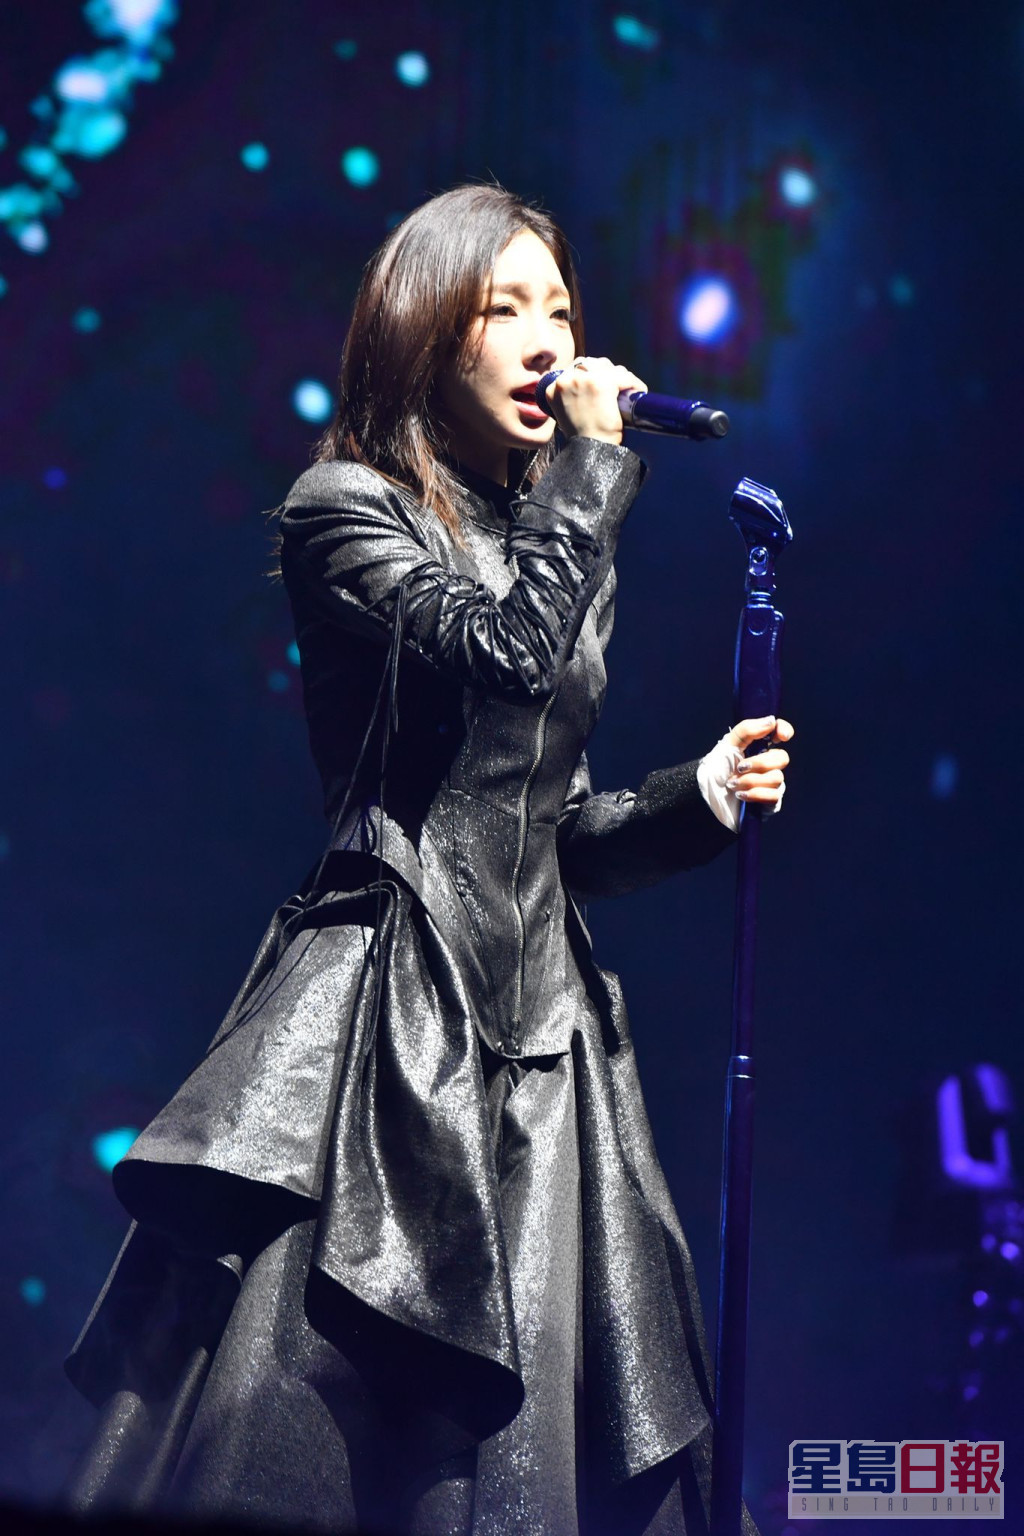 泰妍昨晚假亚洲博览馆Arena举行个人演唱会《The ODD Of LOVE in HONG KONG》 。  ​